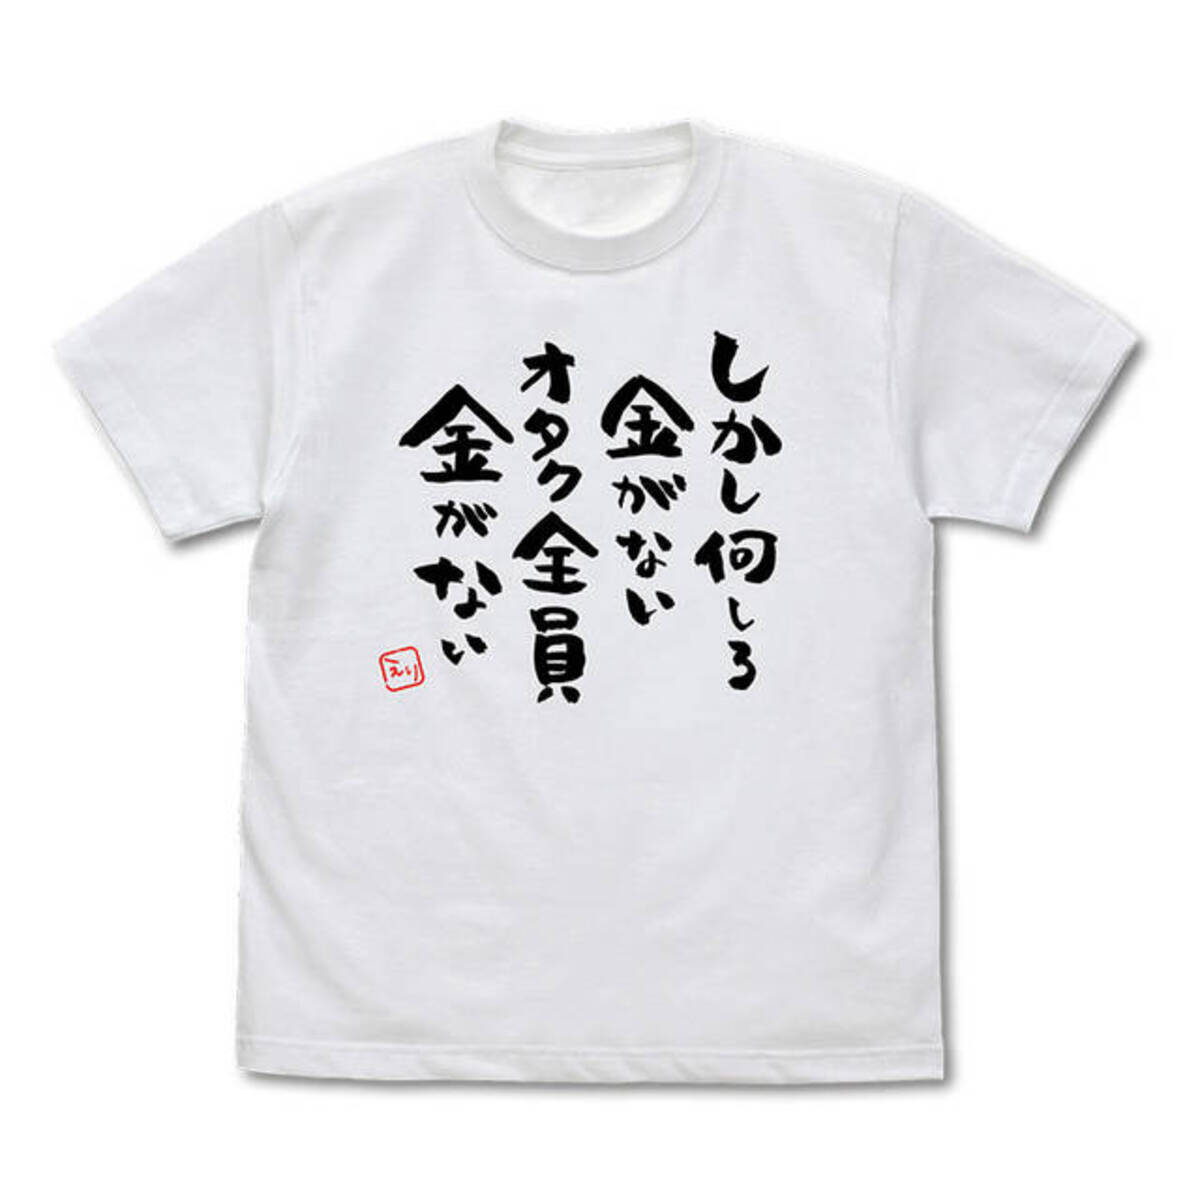 激しく同意 名言tシャツが発売 しかし何しろ金がないオタク全員金がない 推し武道 年5月13日 エキサイトニュース